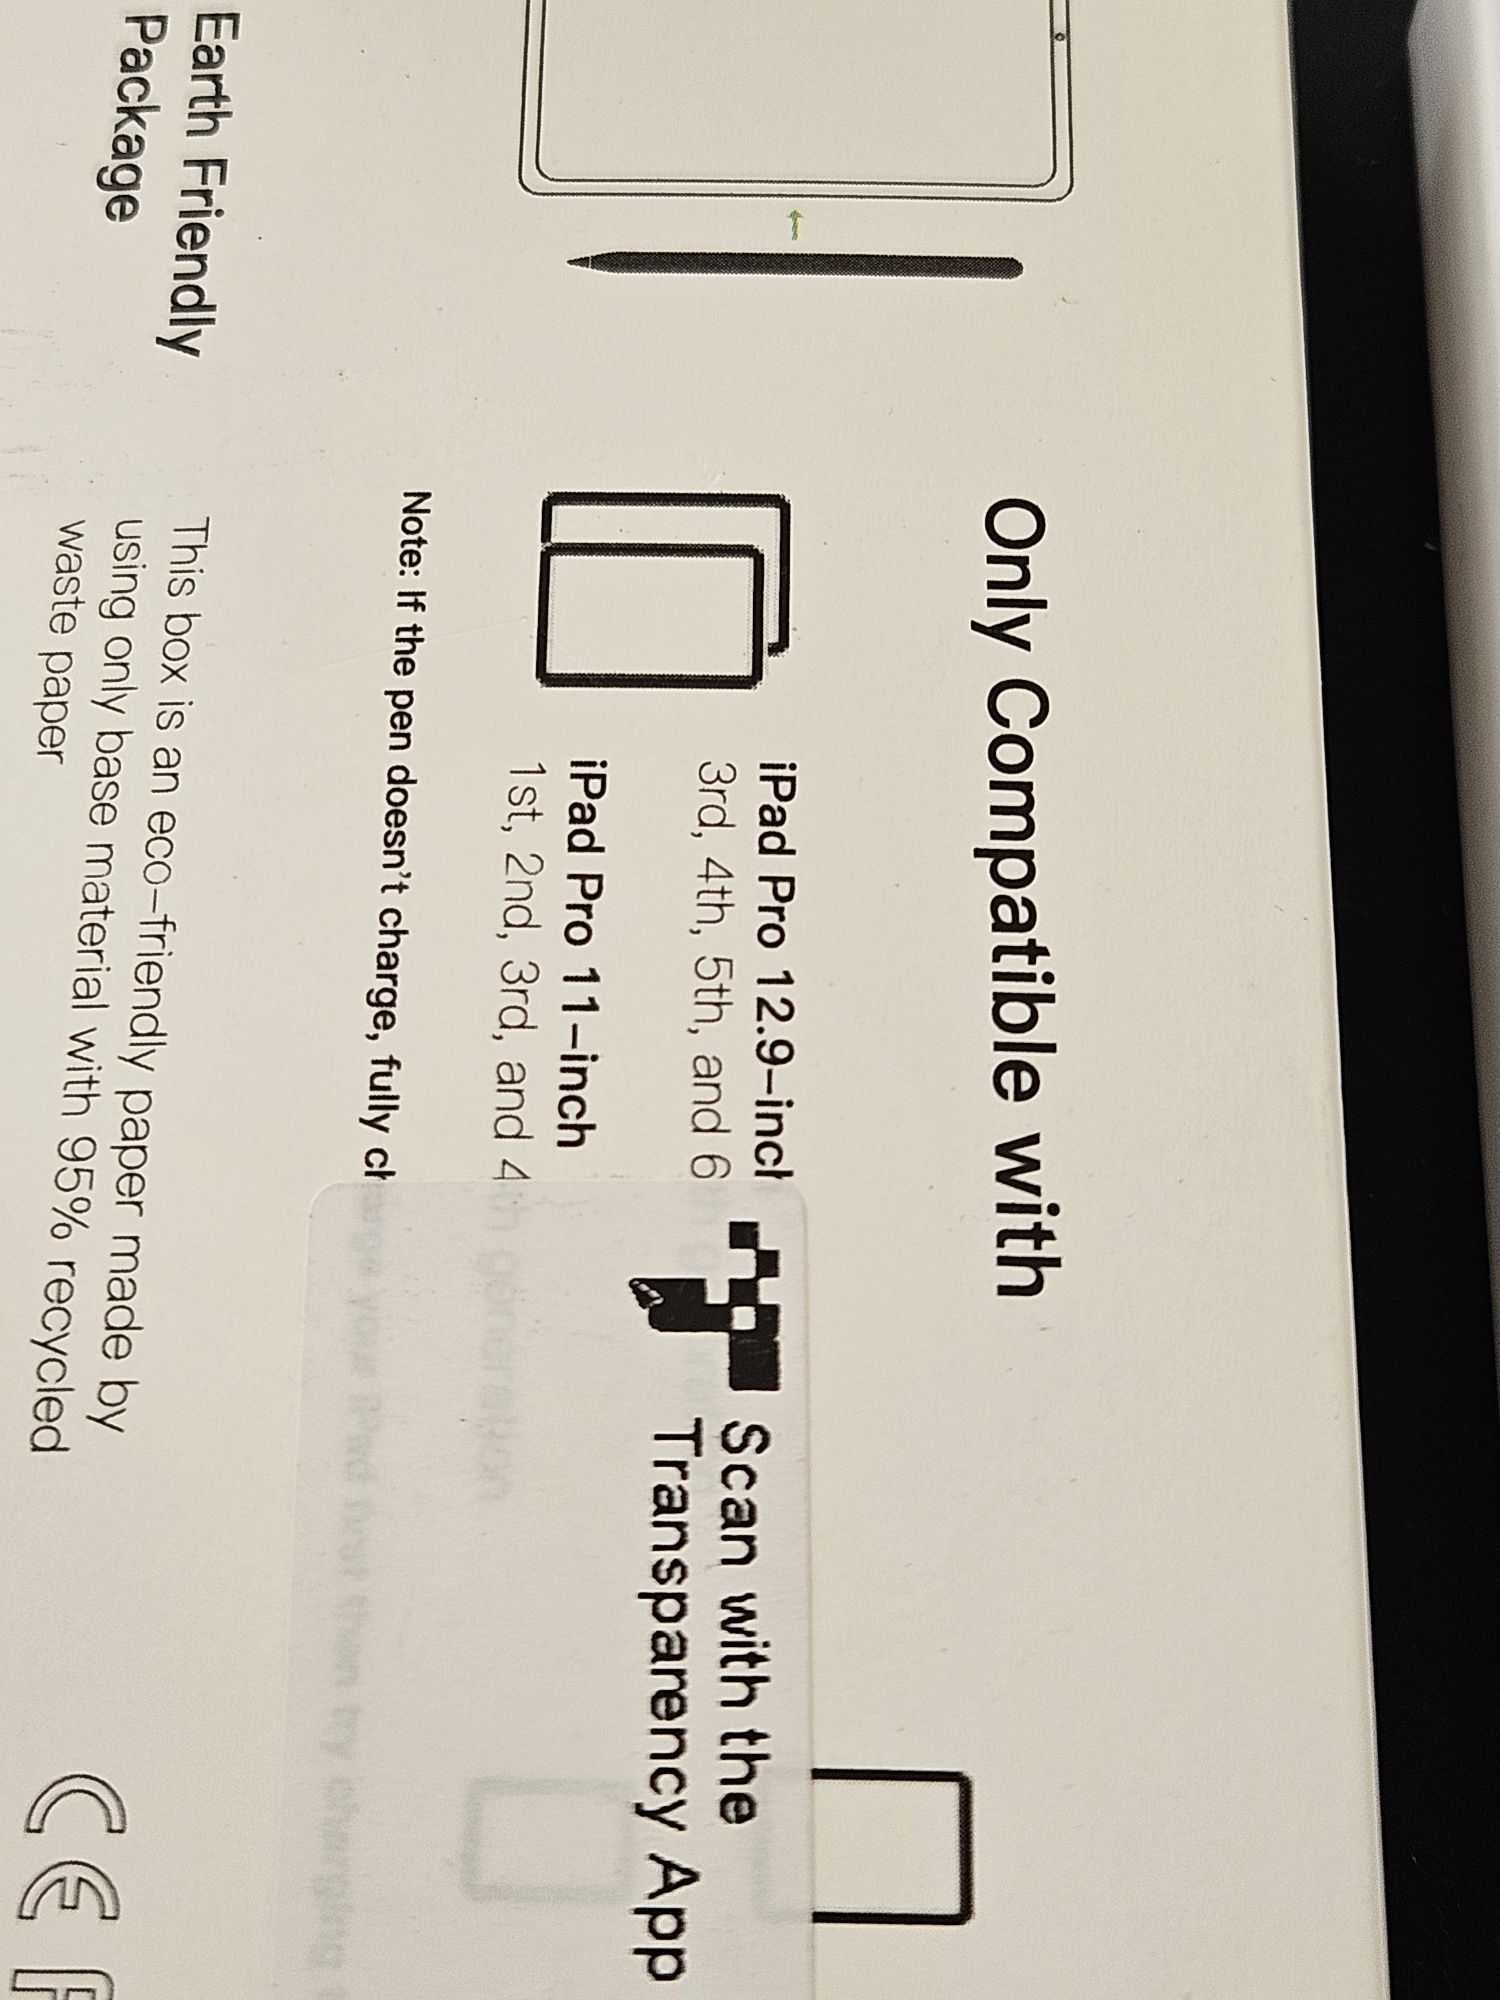 Rysik Pensil do Apple iPad 11 / 12.9 Ładowanie Magnetyczne